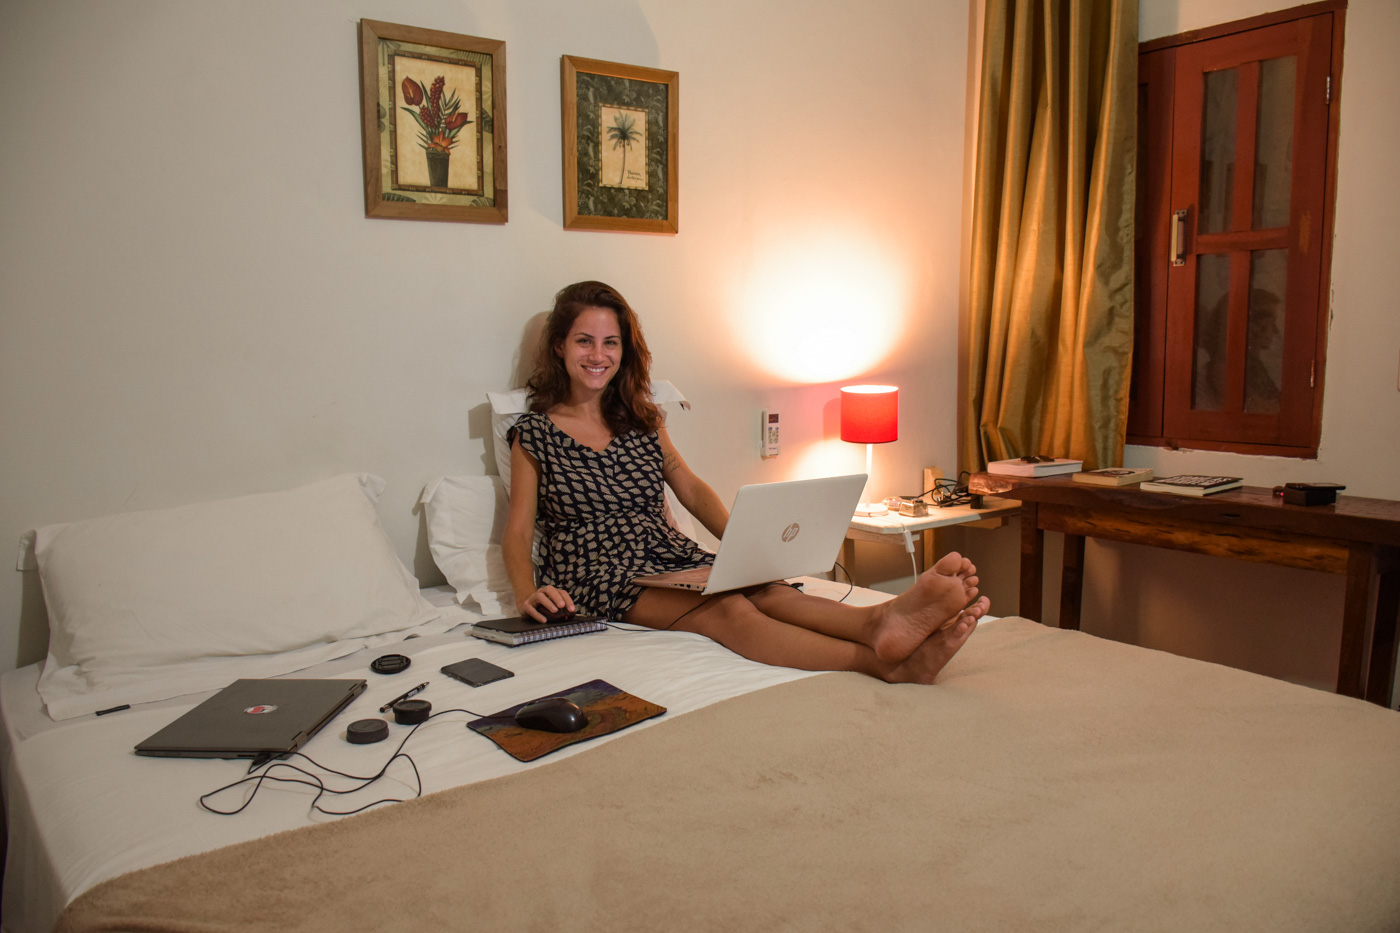 Fe working in the bed of the Flor de Debora Inn